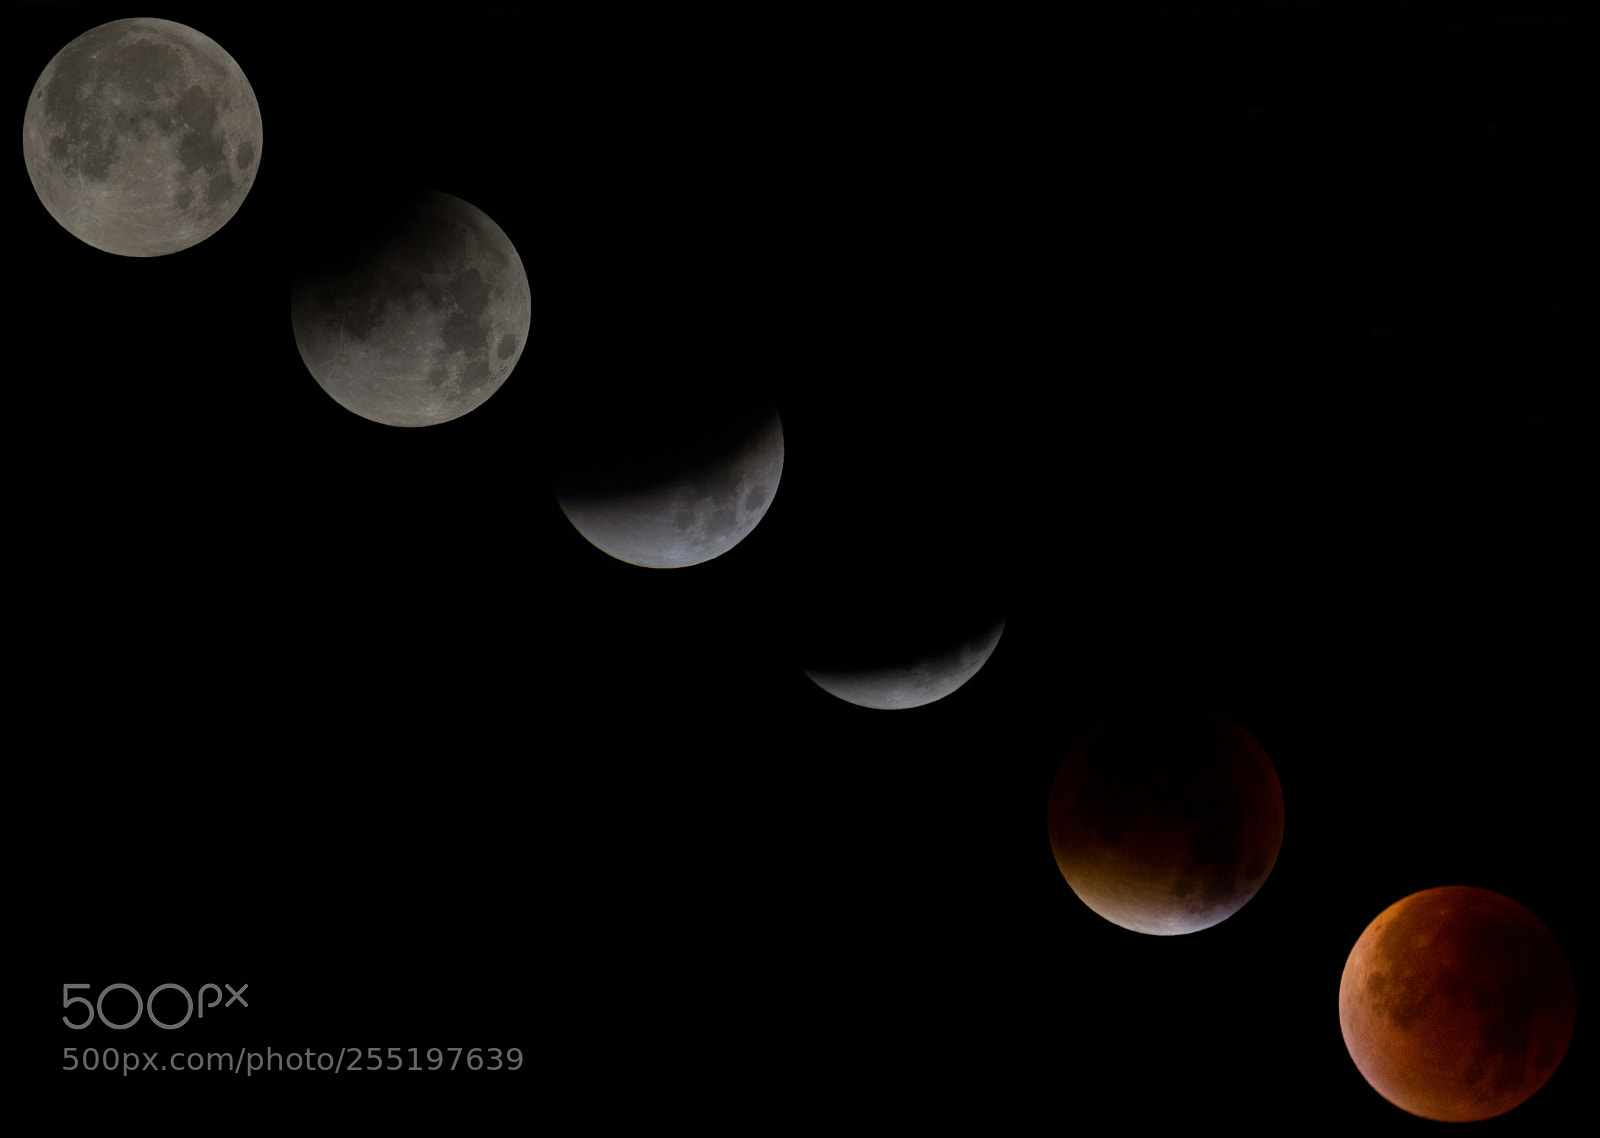 Canon EOS 7D sample photo. Lunar eclipse photography